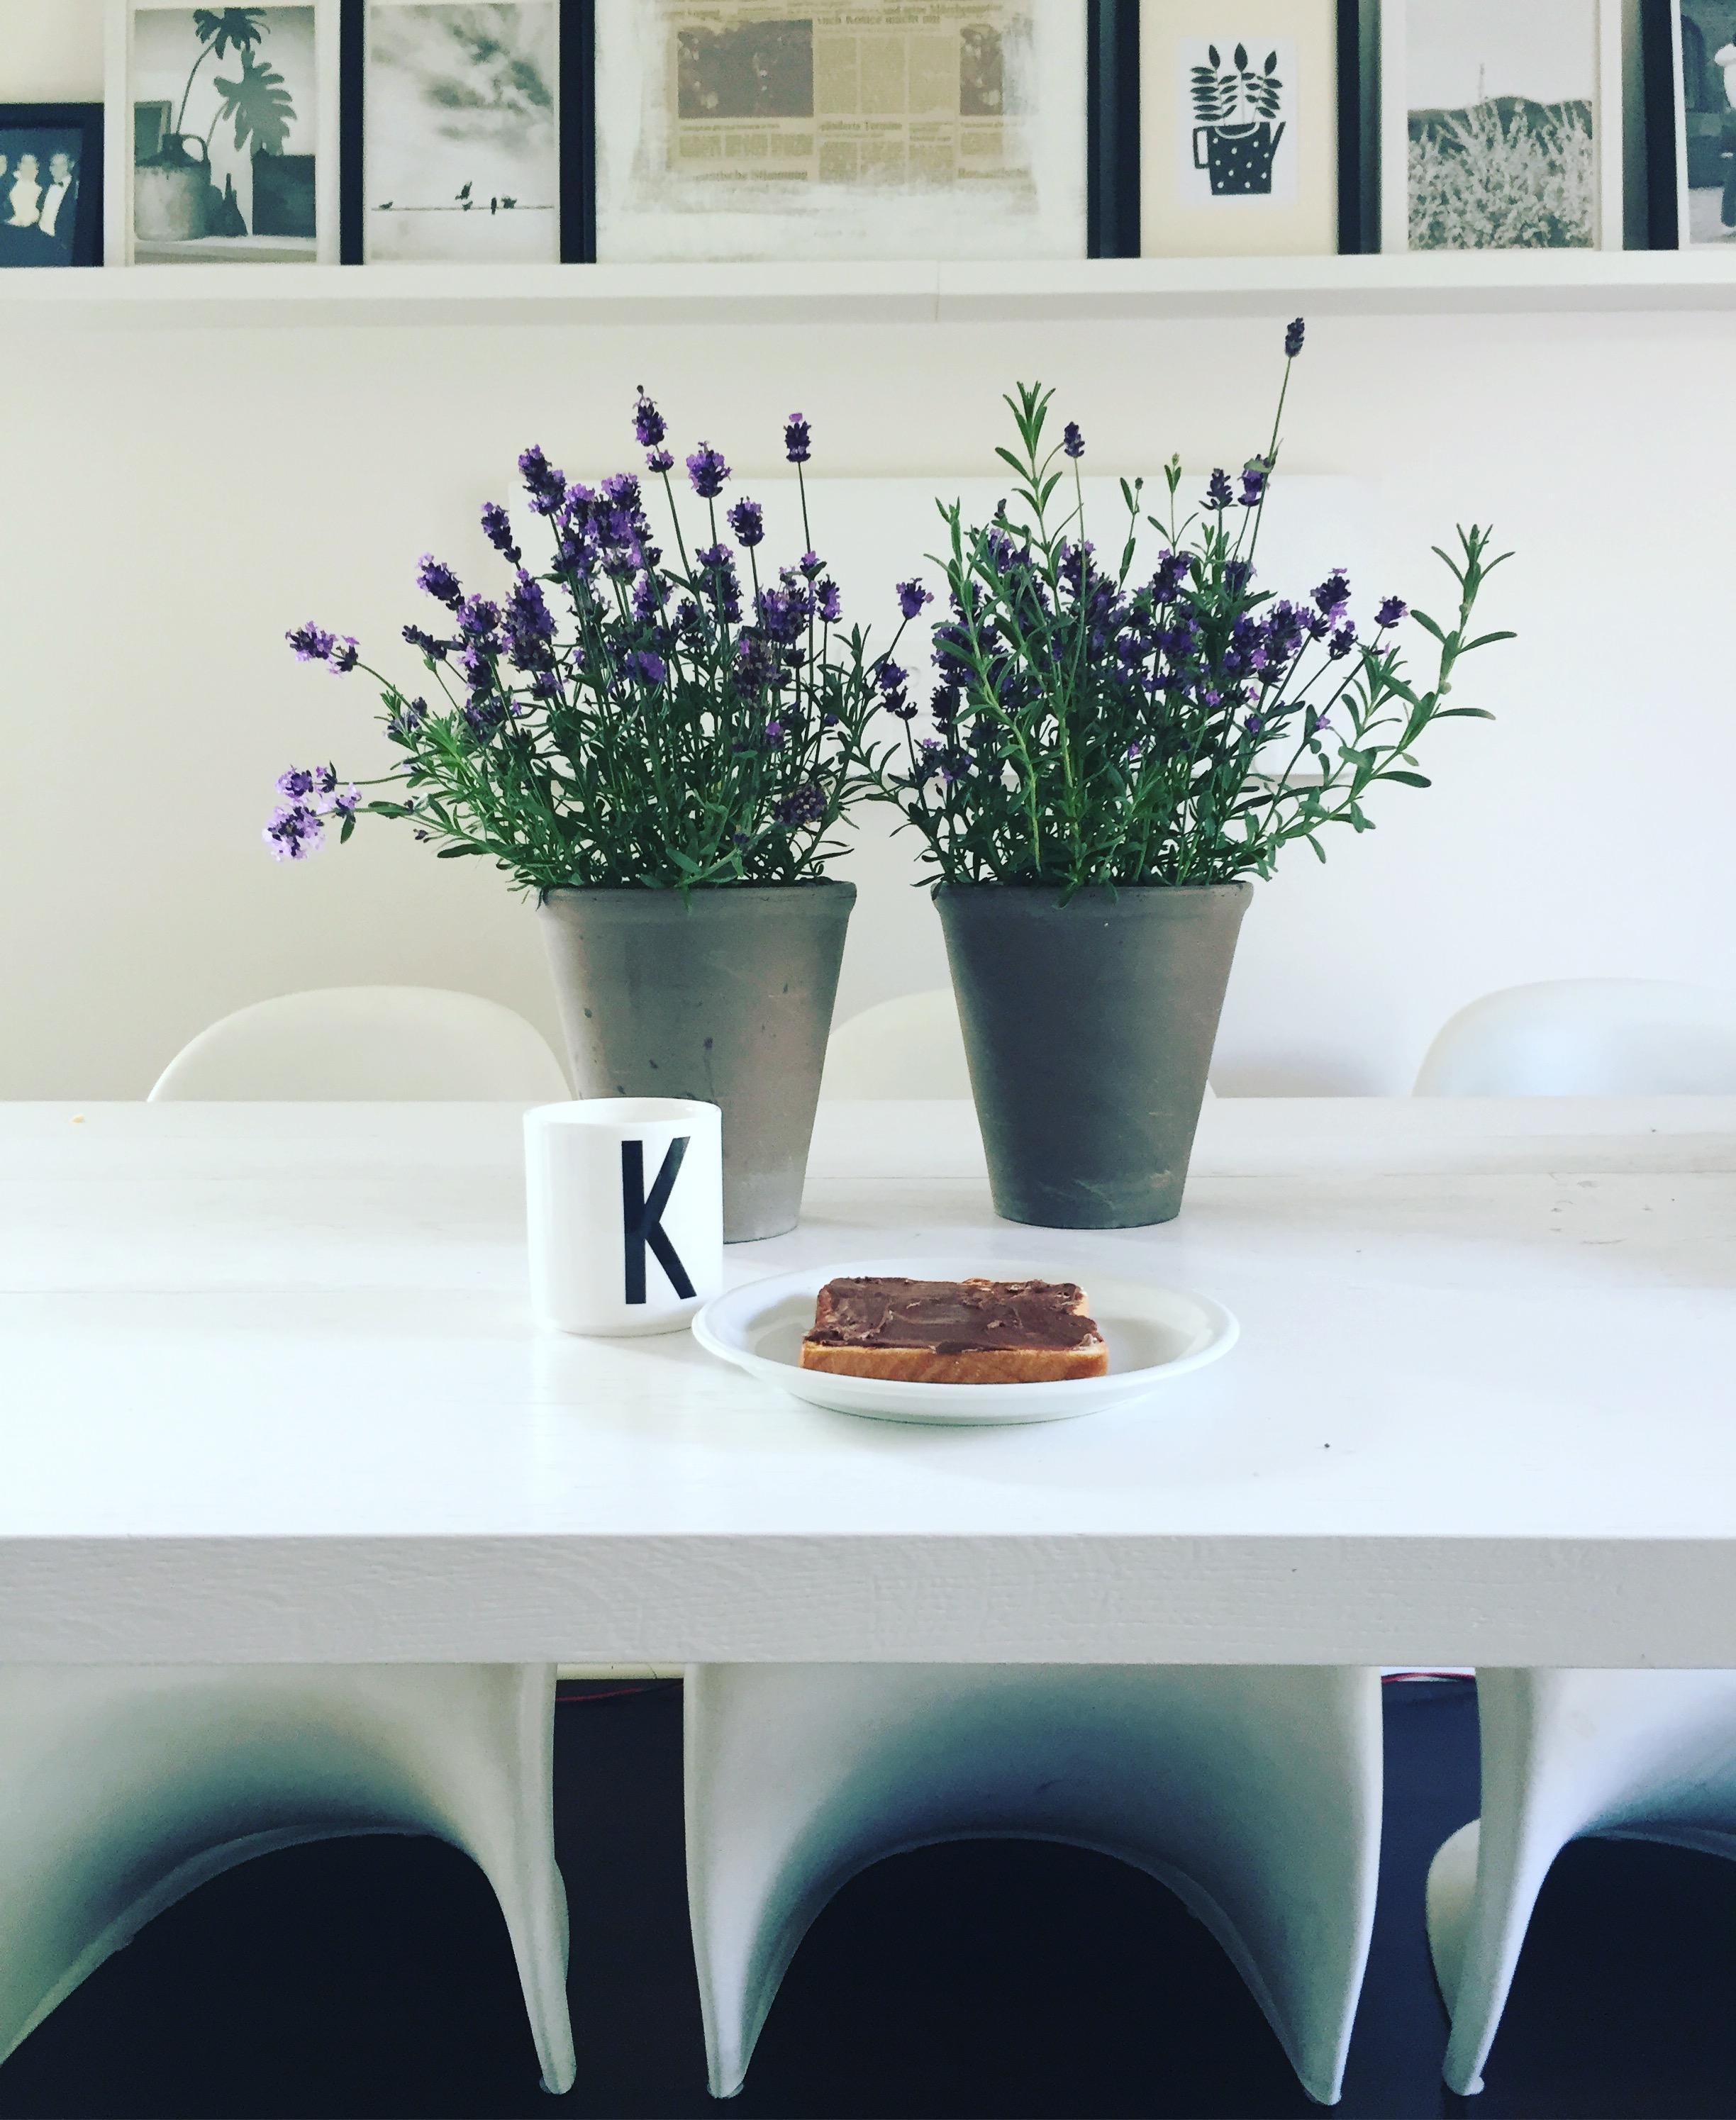 Mei Lavendel, er blüht den ganzen Sommer 🖤🖤🖤#flowers #lavendel #livingroom